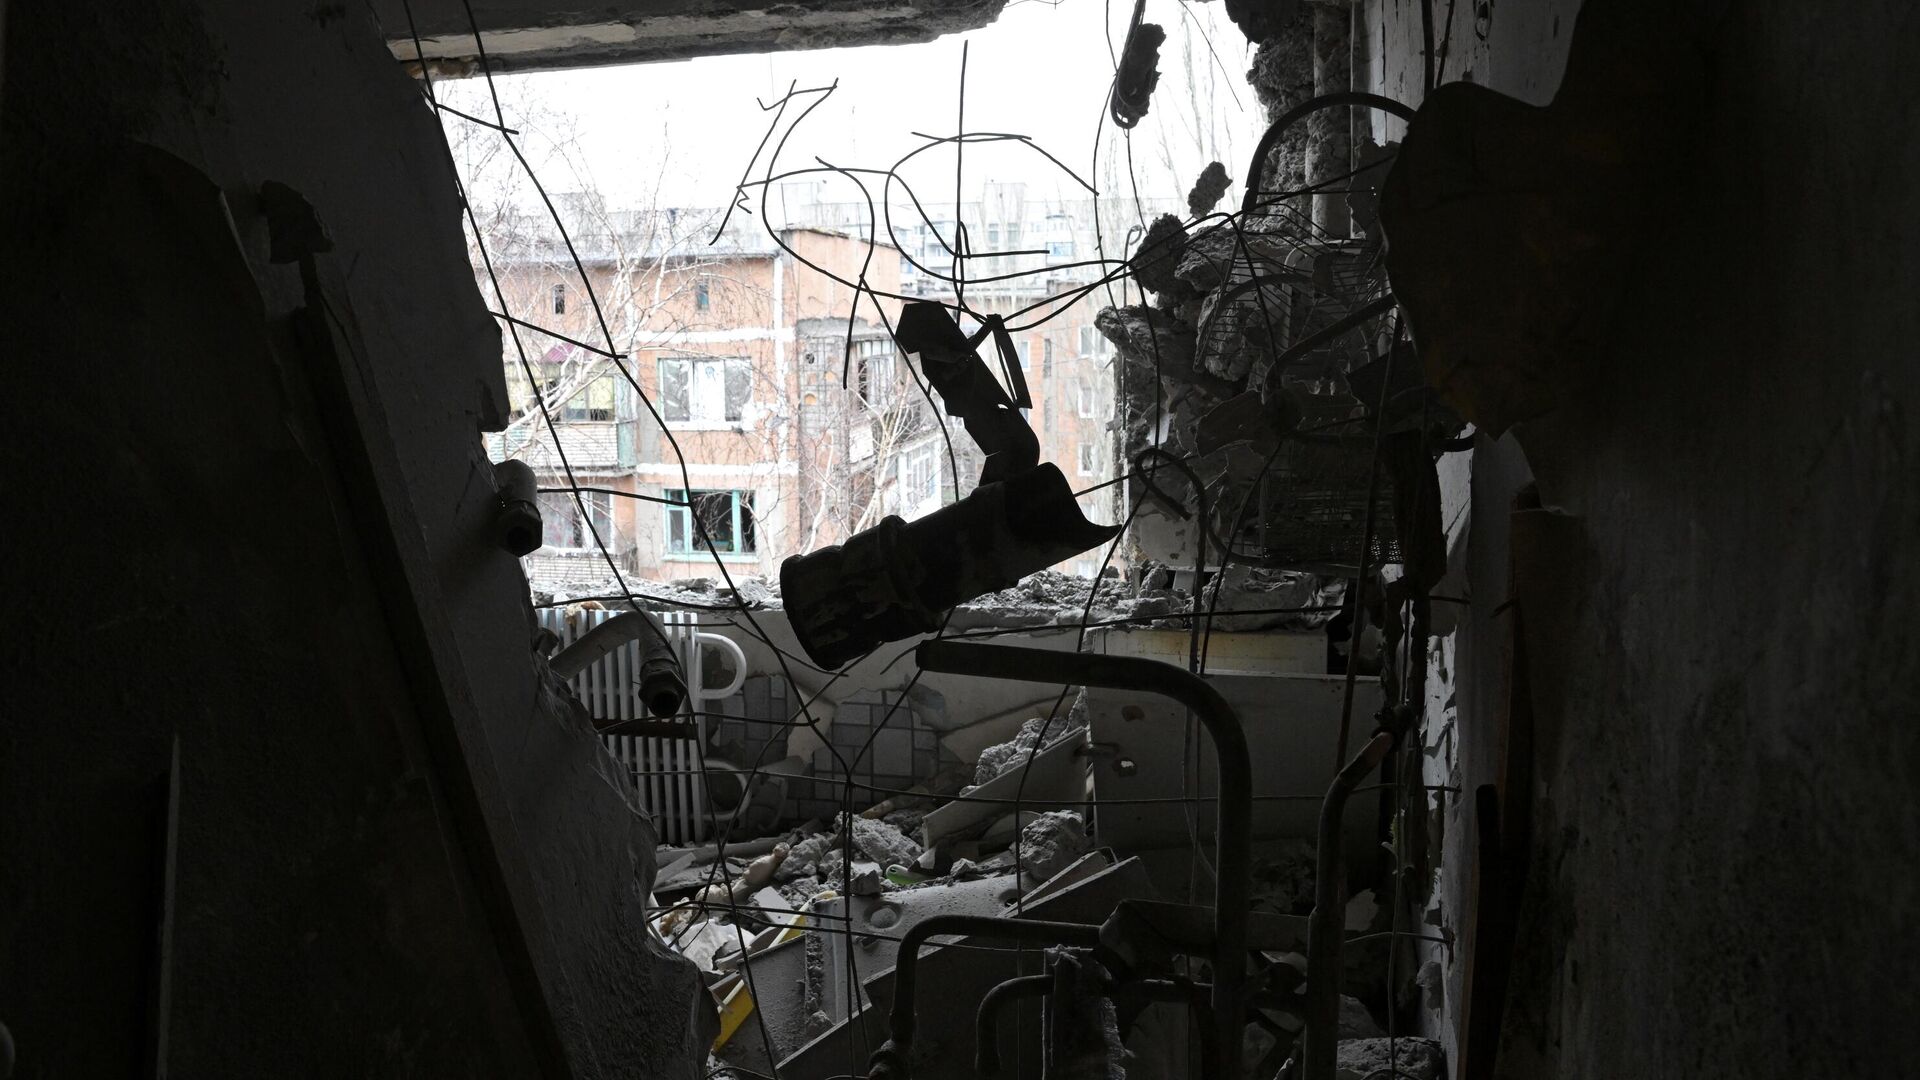 Квартира, пострадавшая в результате прямого попадания снаряда - РИА Новости, 1920, 14.05.2022